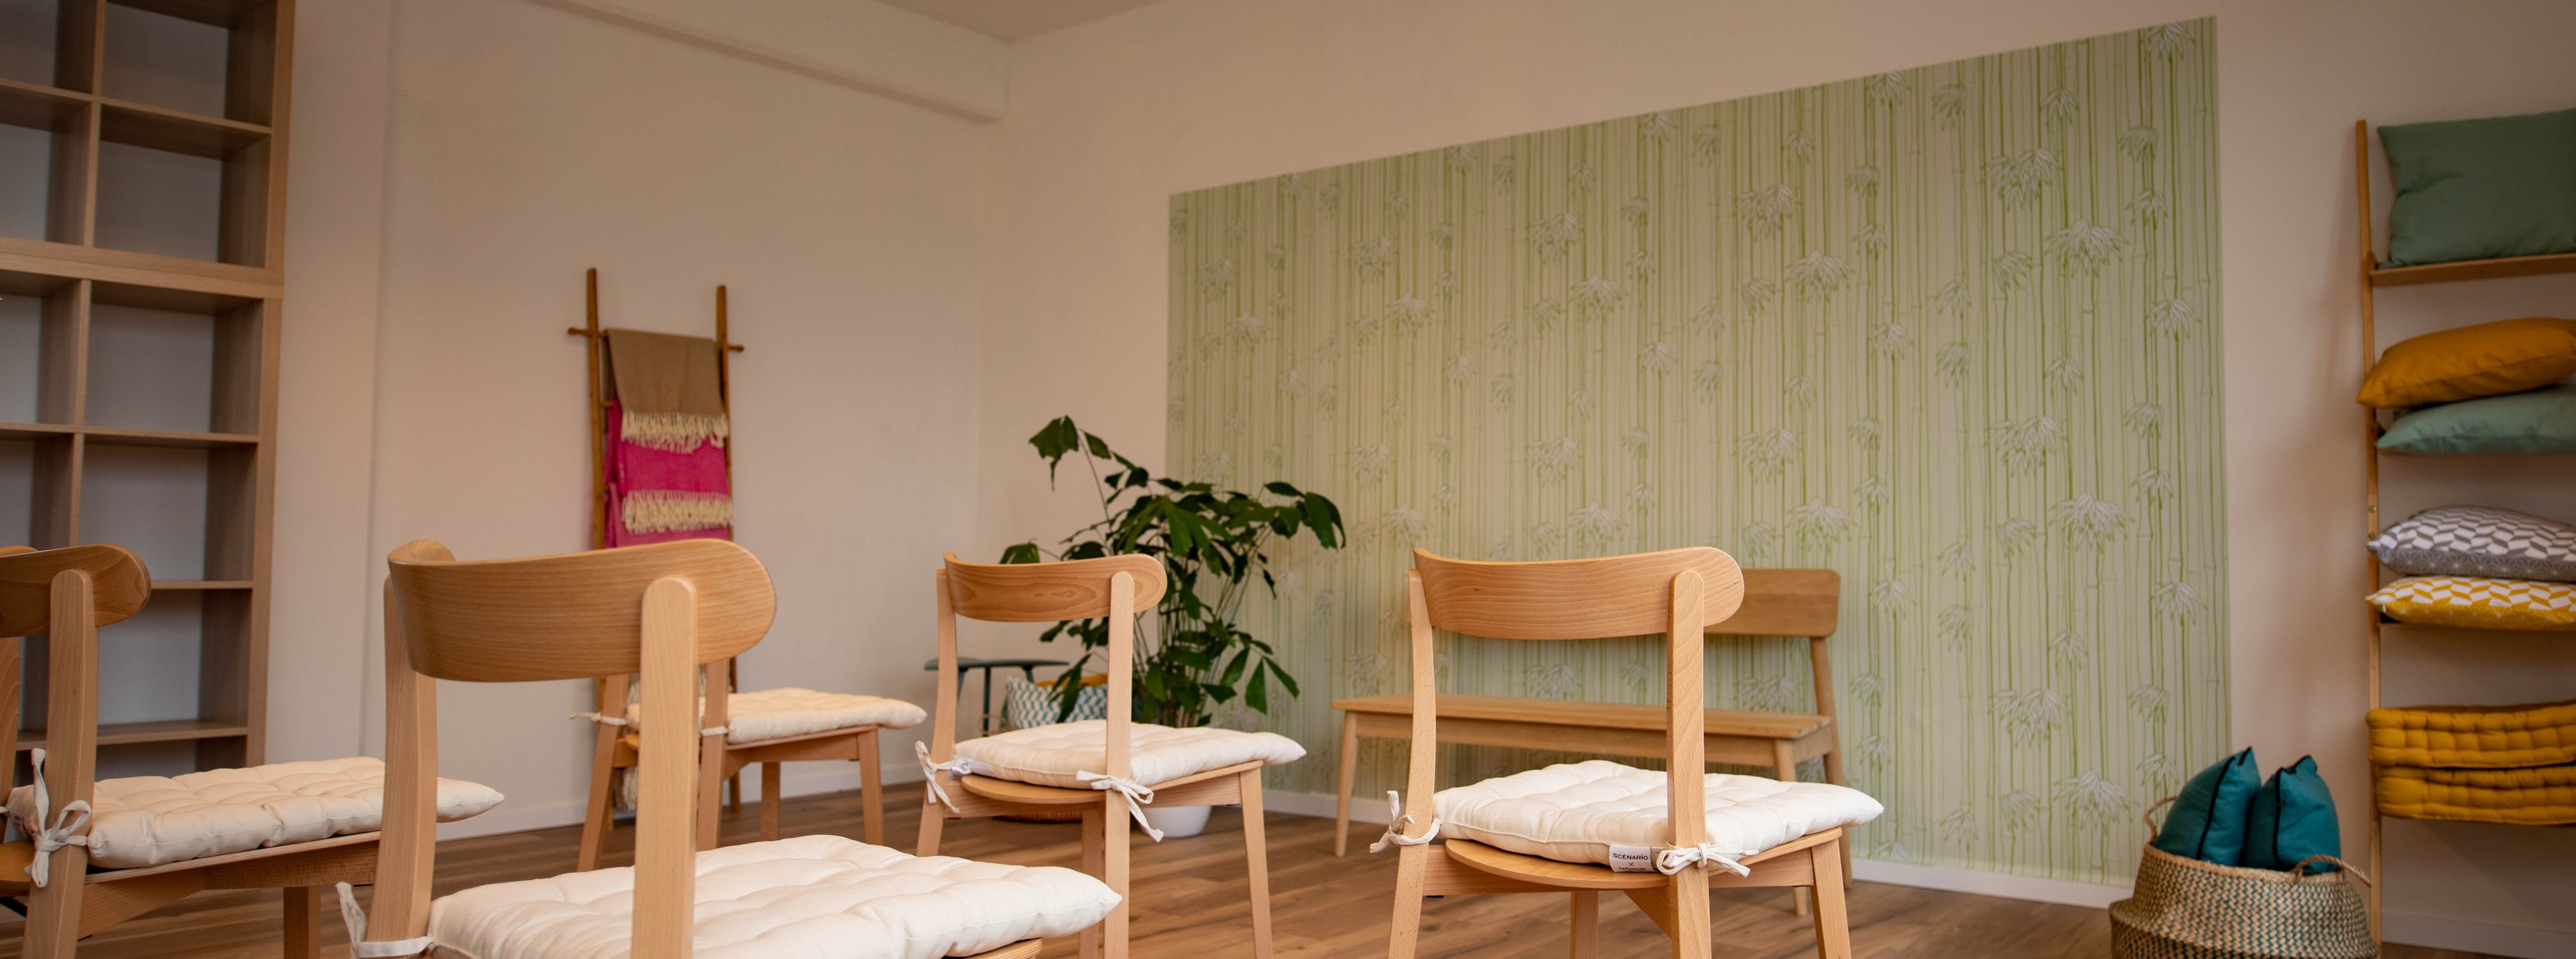 Konzept des Qilala Meditationsstudios in Bern